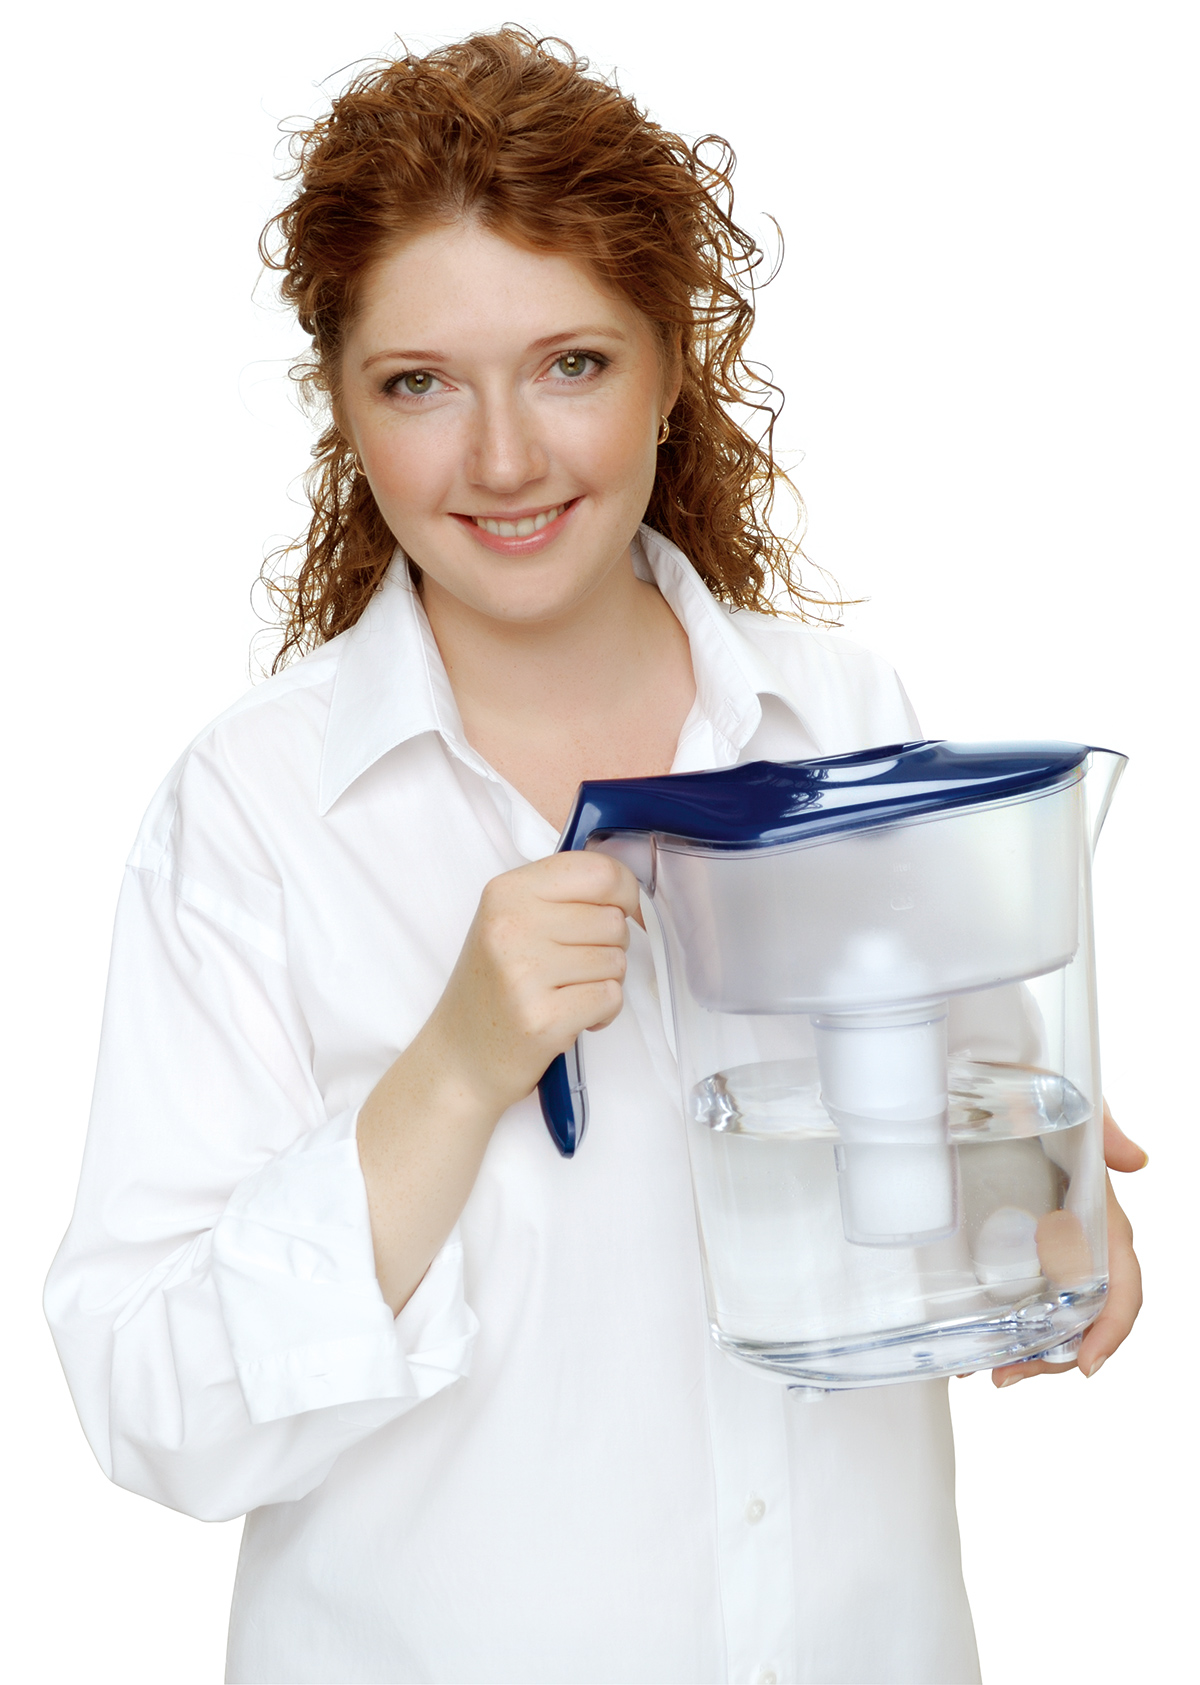 Фильтр-кувшин идеален для получения чистой воды для питья, приготовления вкусной и здоровой пищи